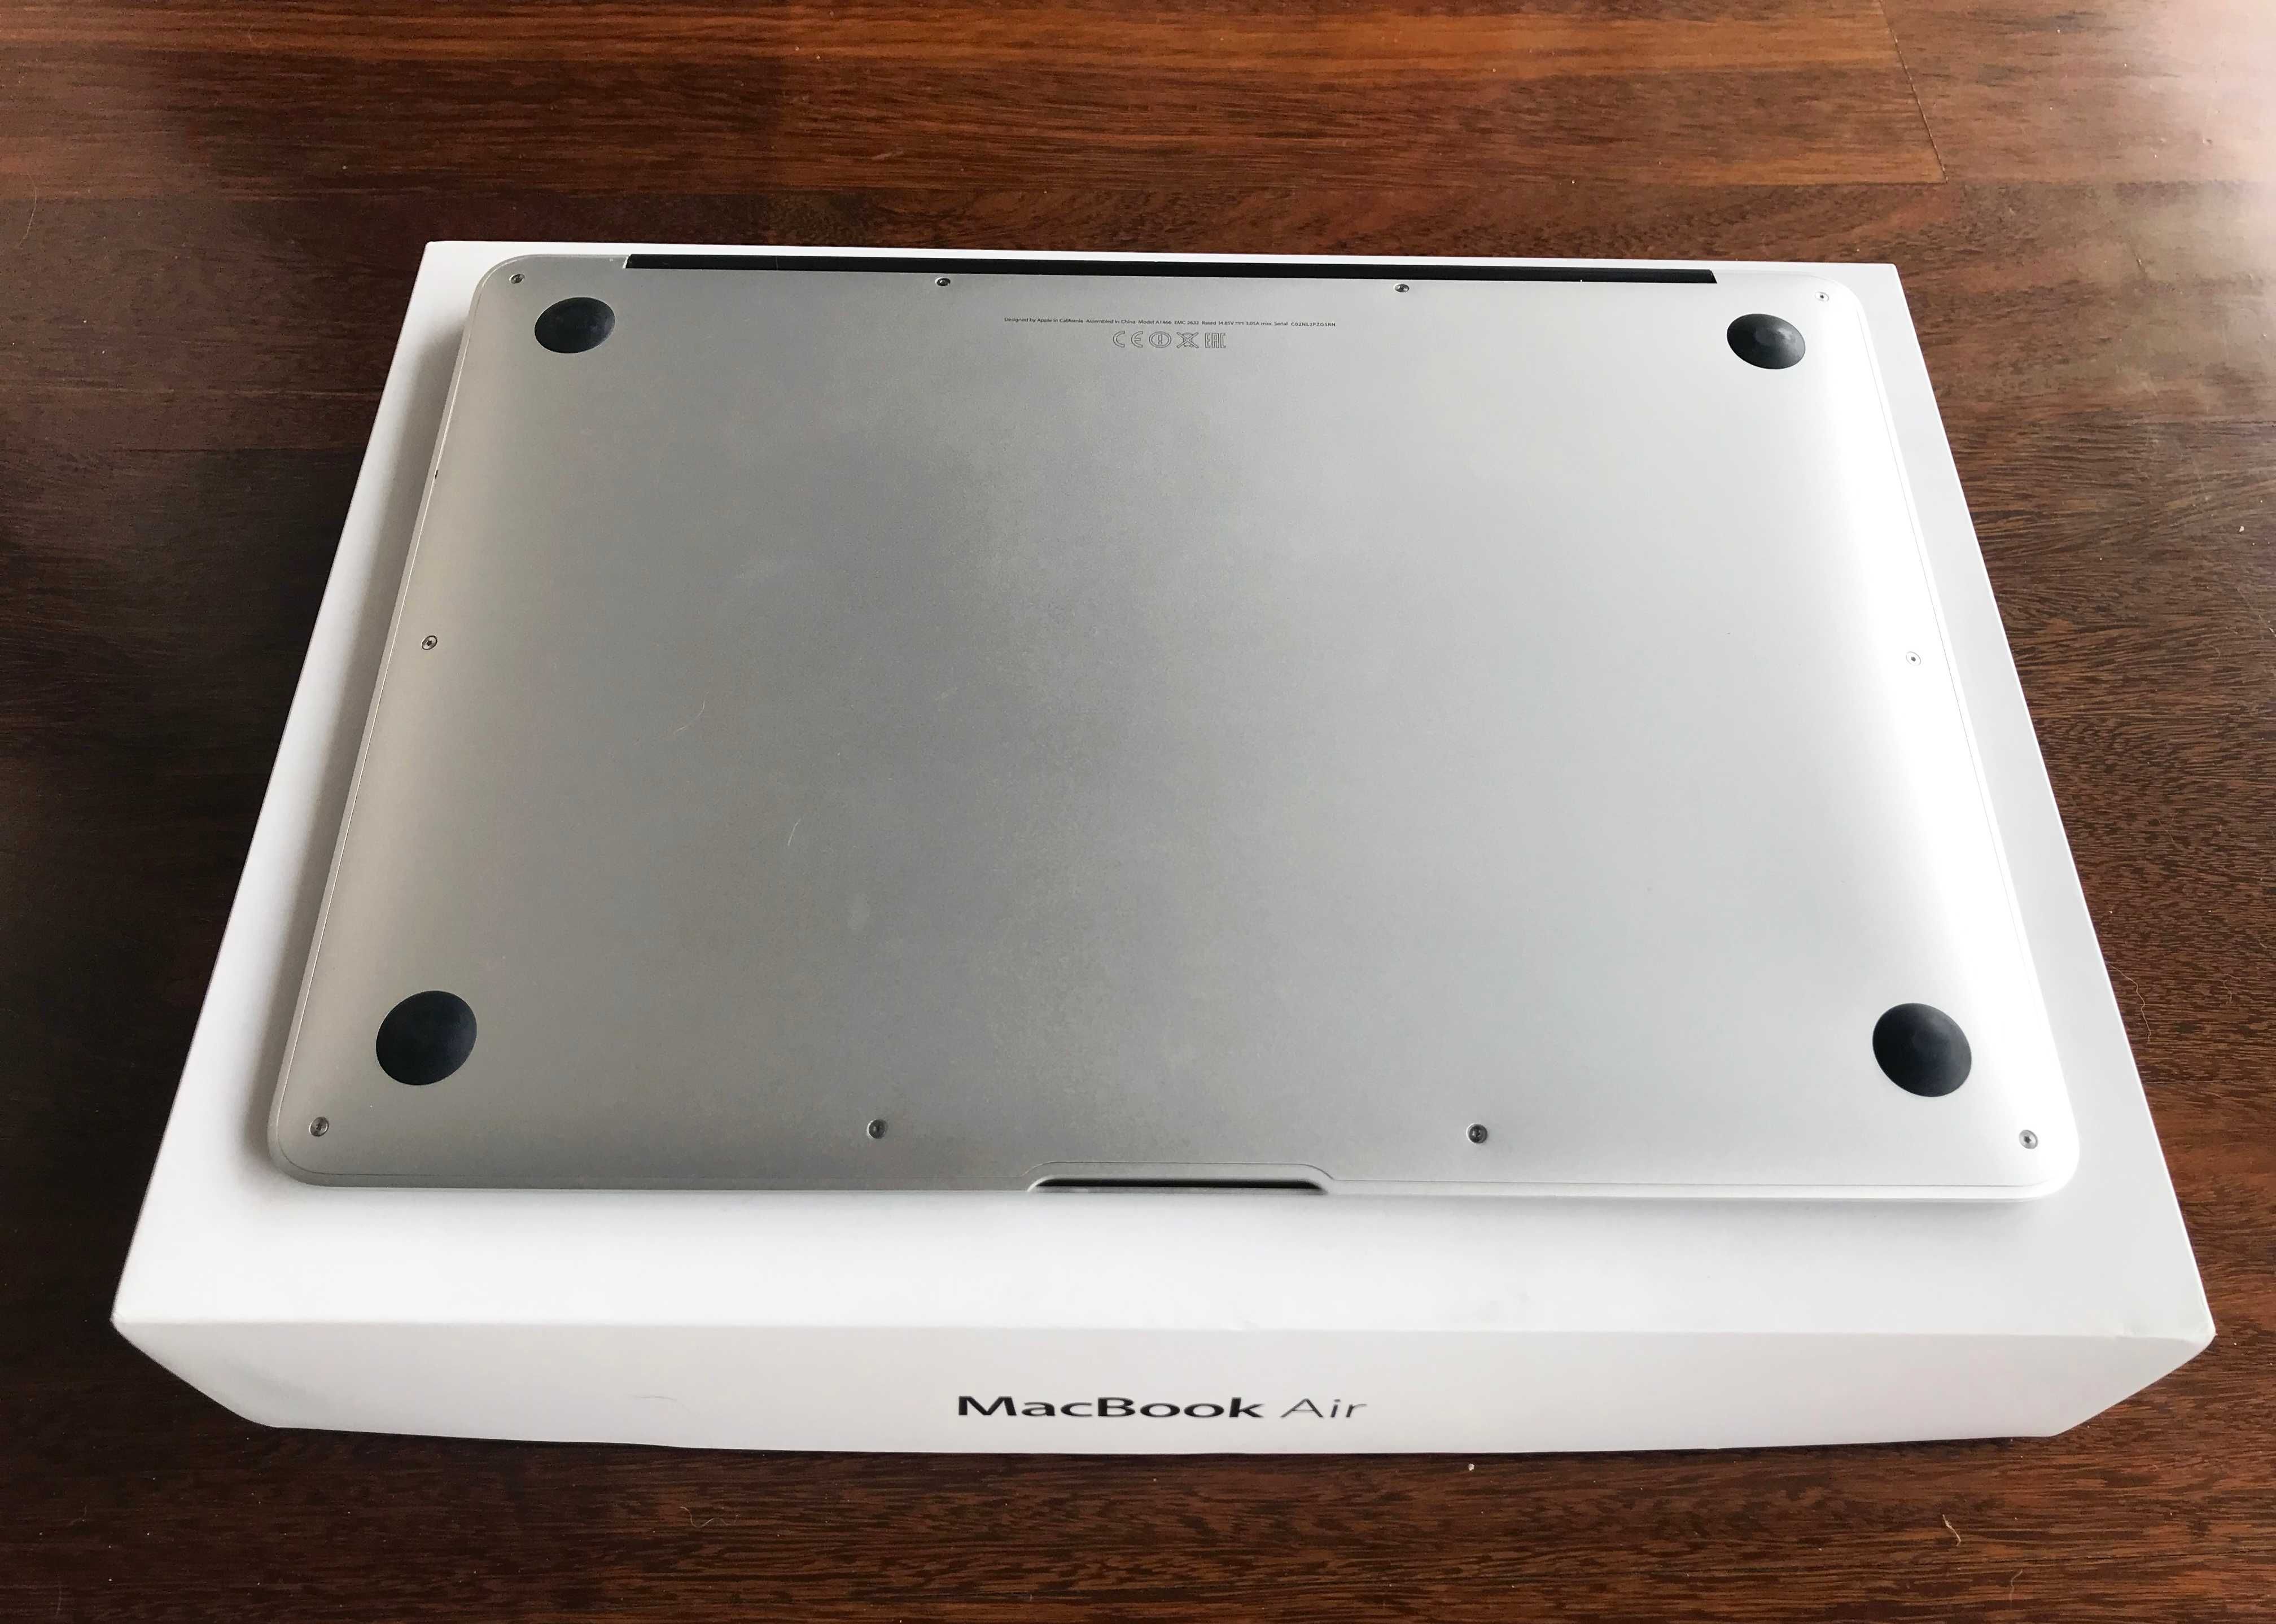 MacBook Air 13 (A1466) - Como novo, na caixa - Com garantia